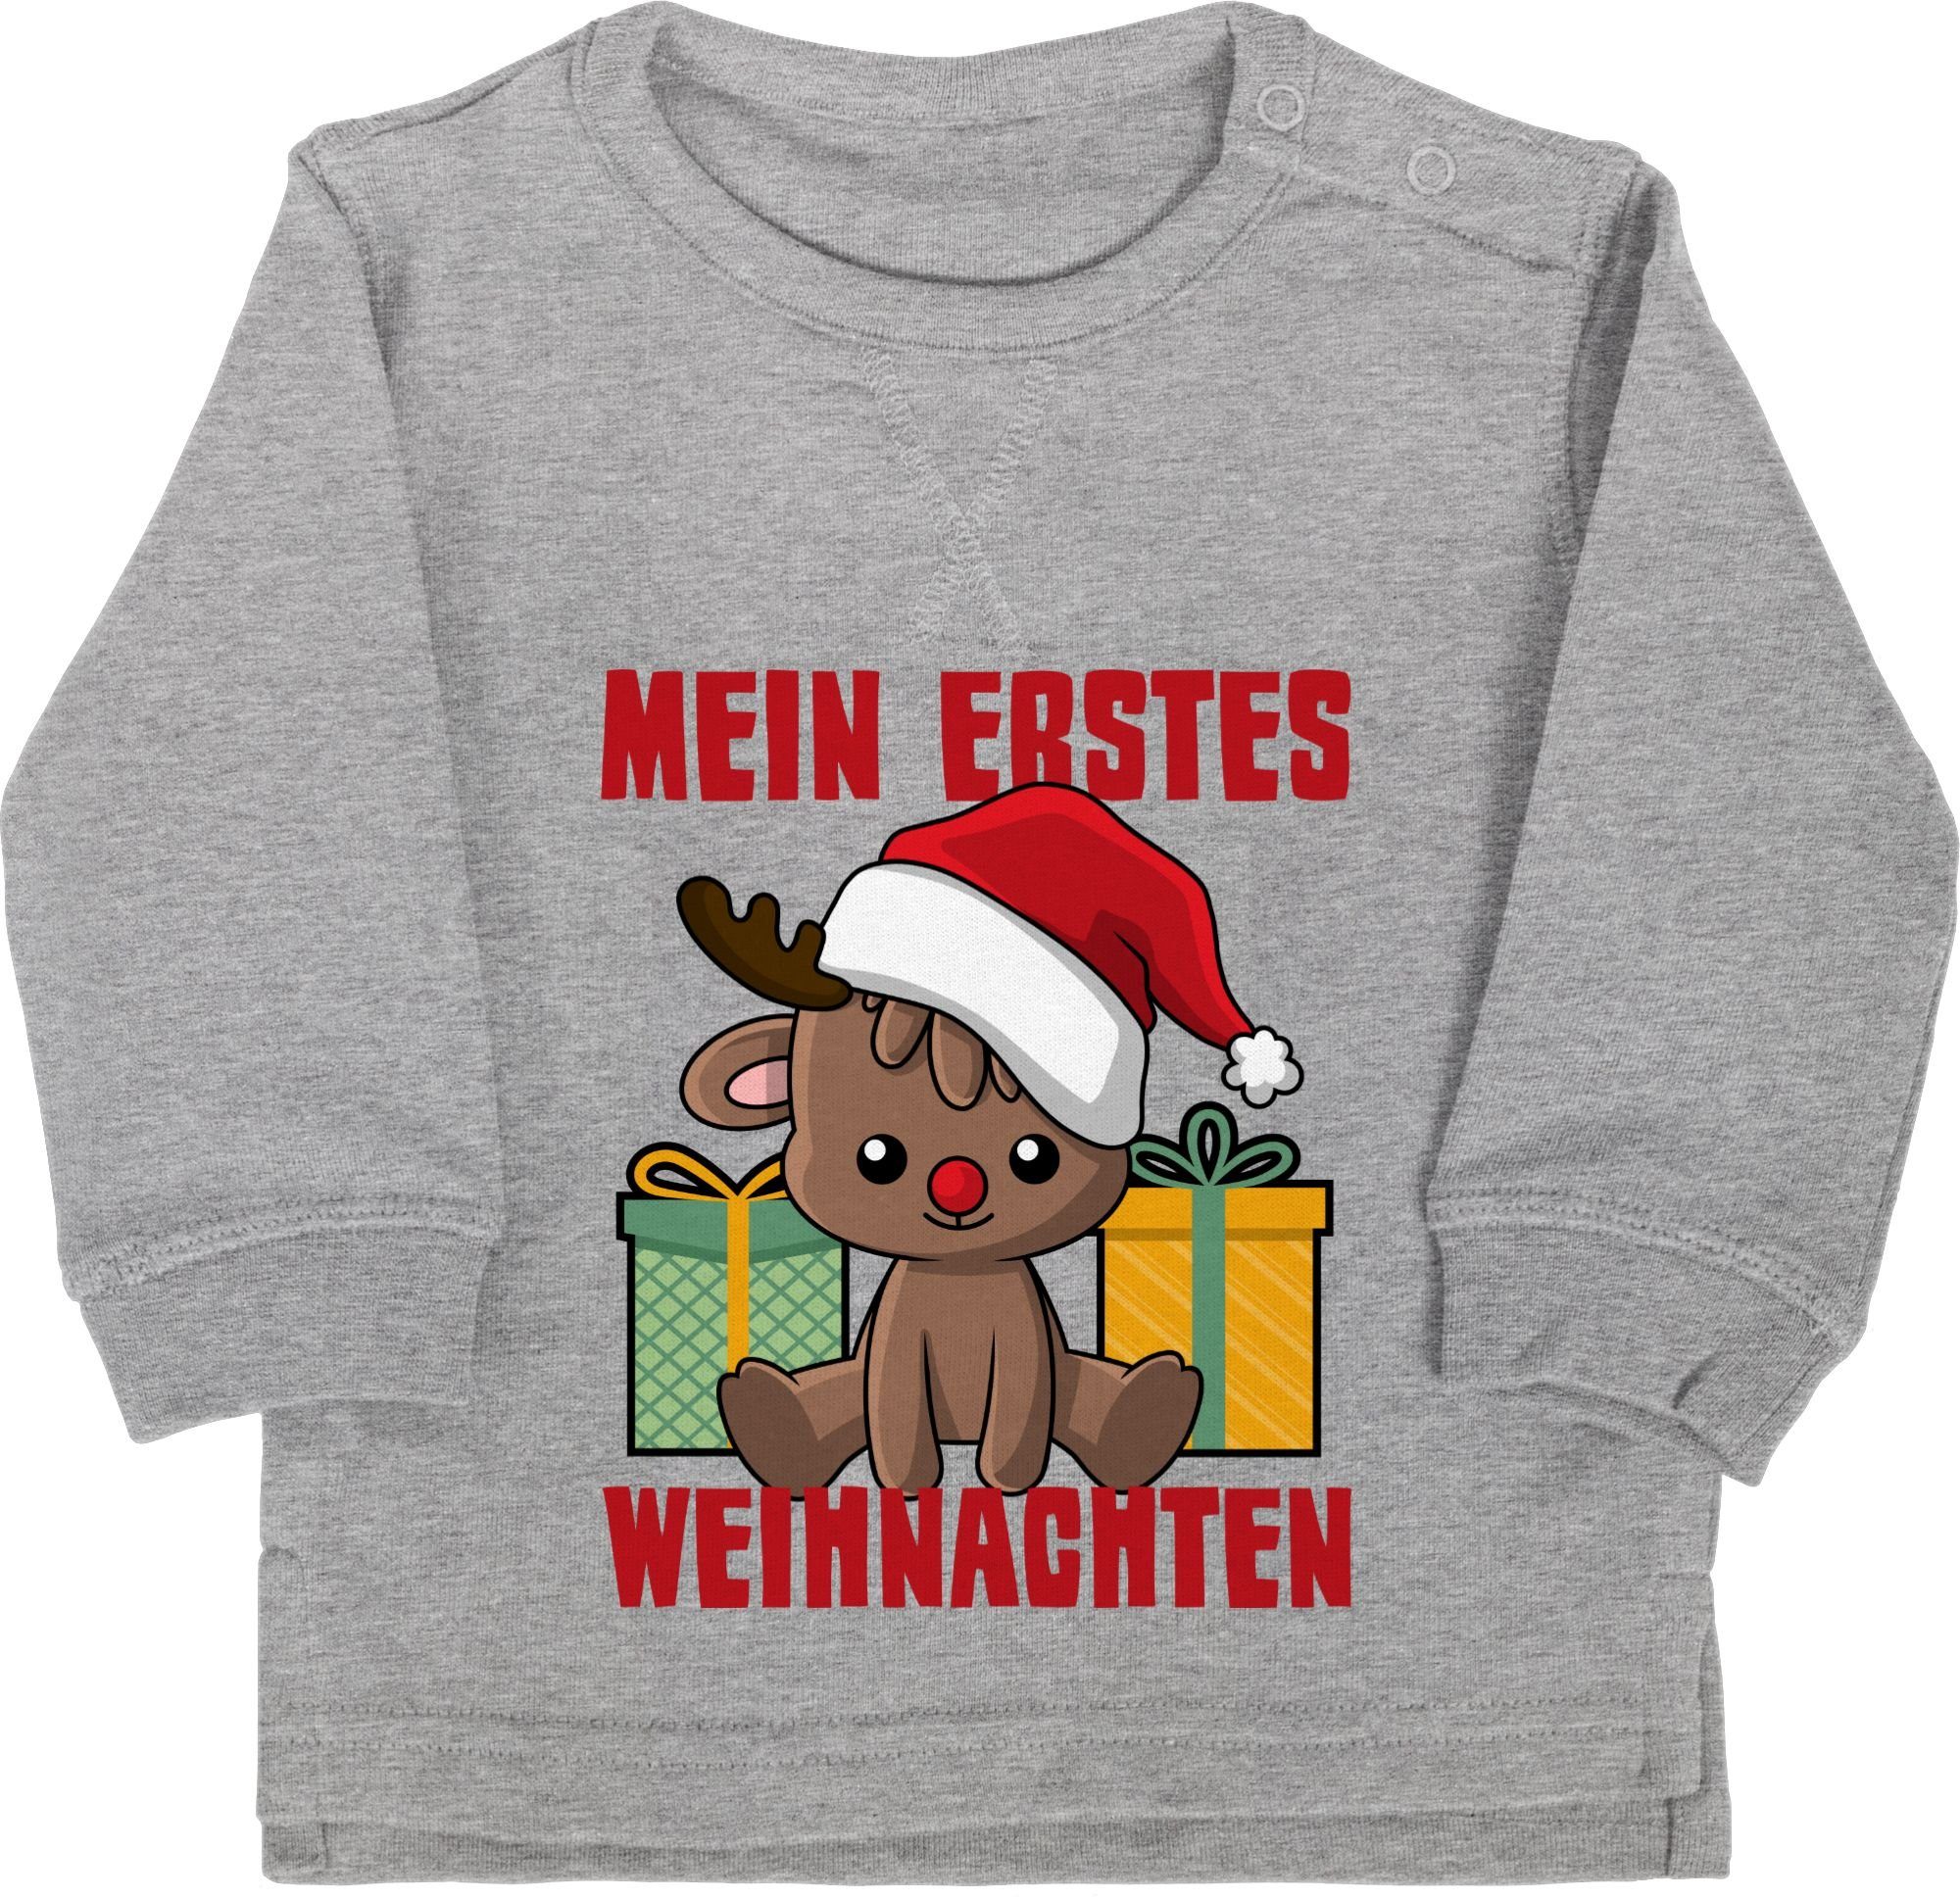 Weihnachten Grau Weihnachten meliert mit Sweatshirt 2 erstes Shirtracer Mein Baby Kleidung Rentier